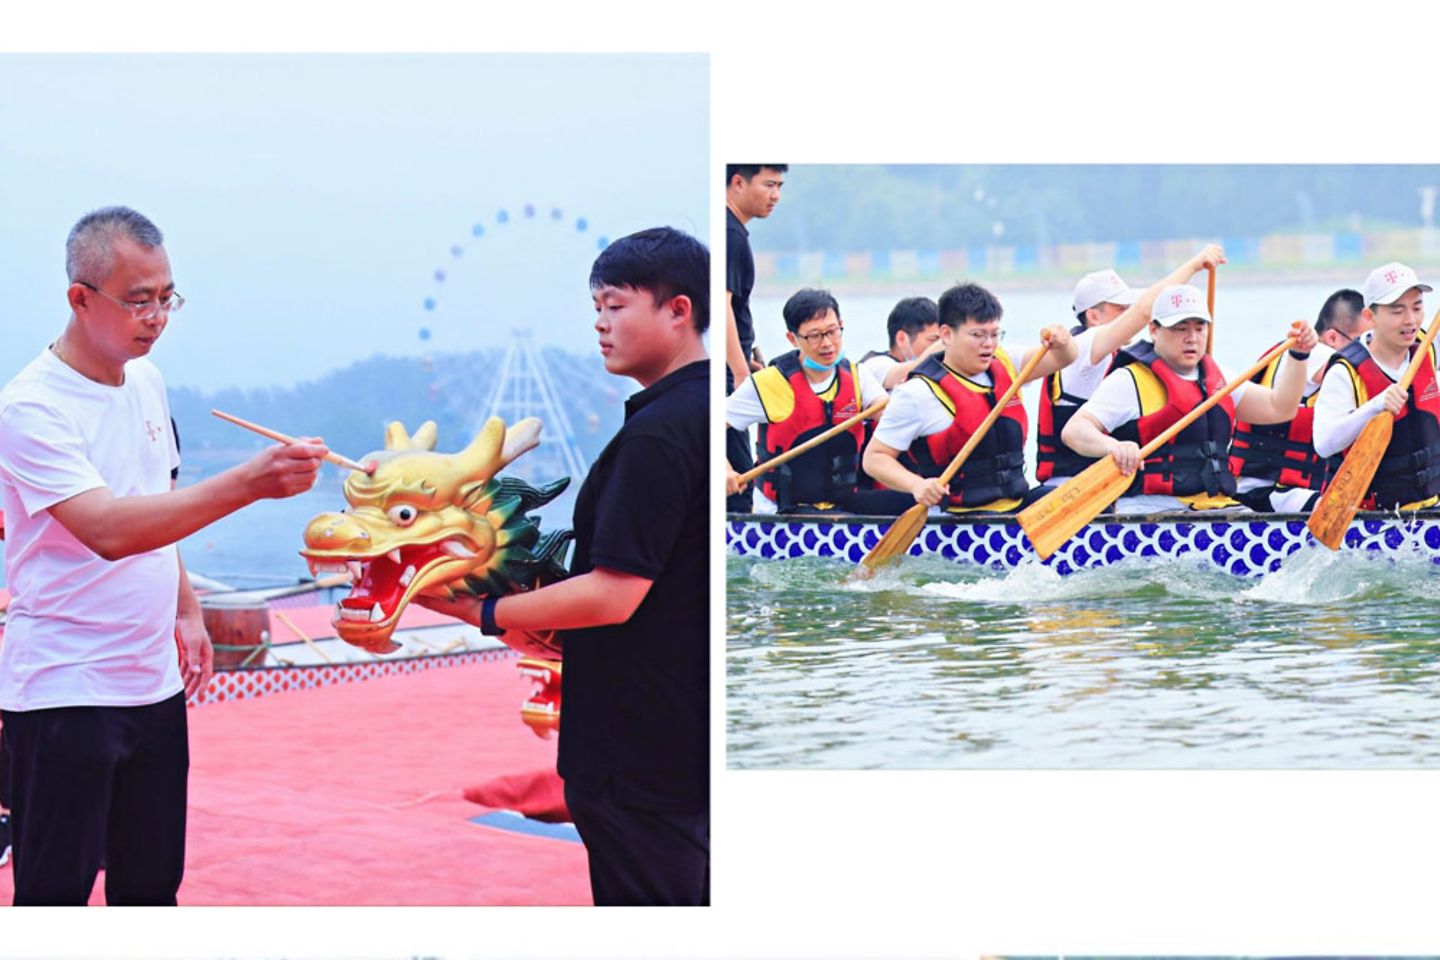 十五周年庆典活动 - dragon boat